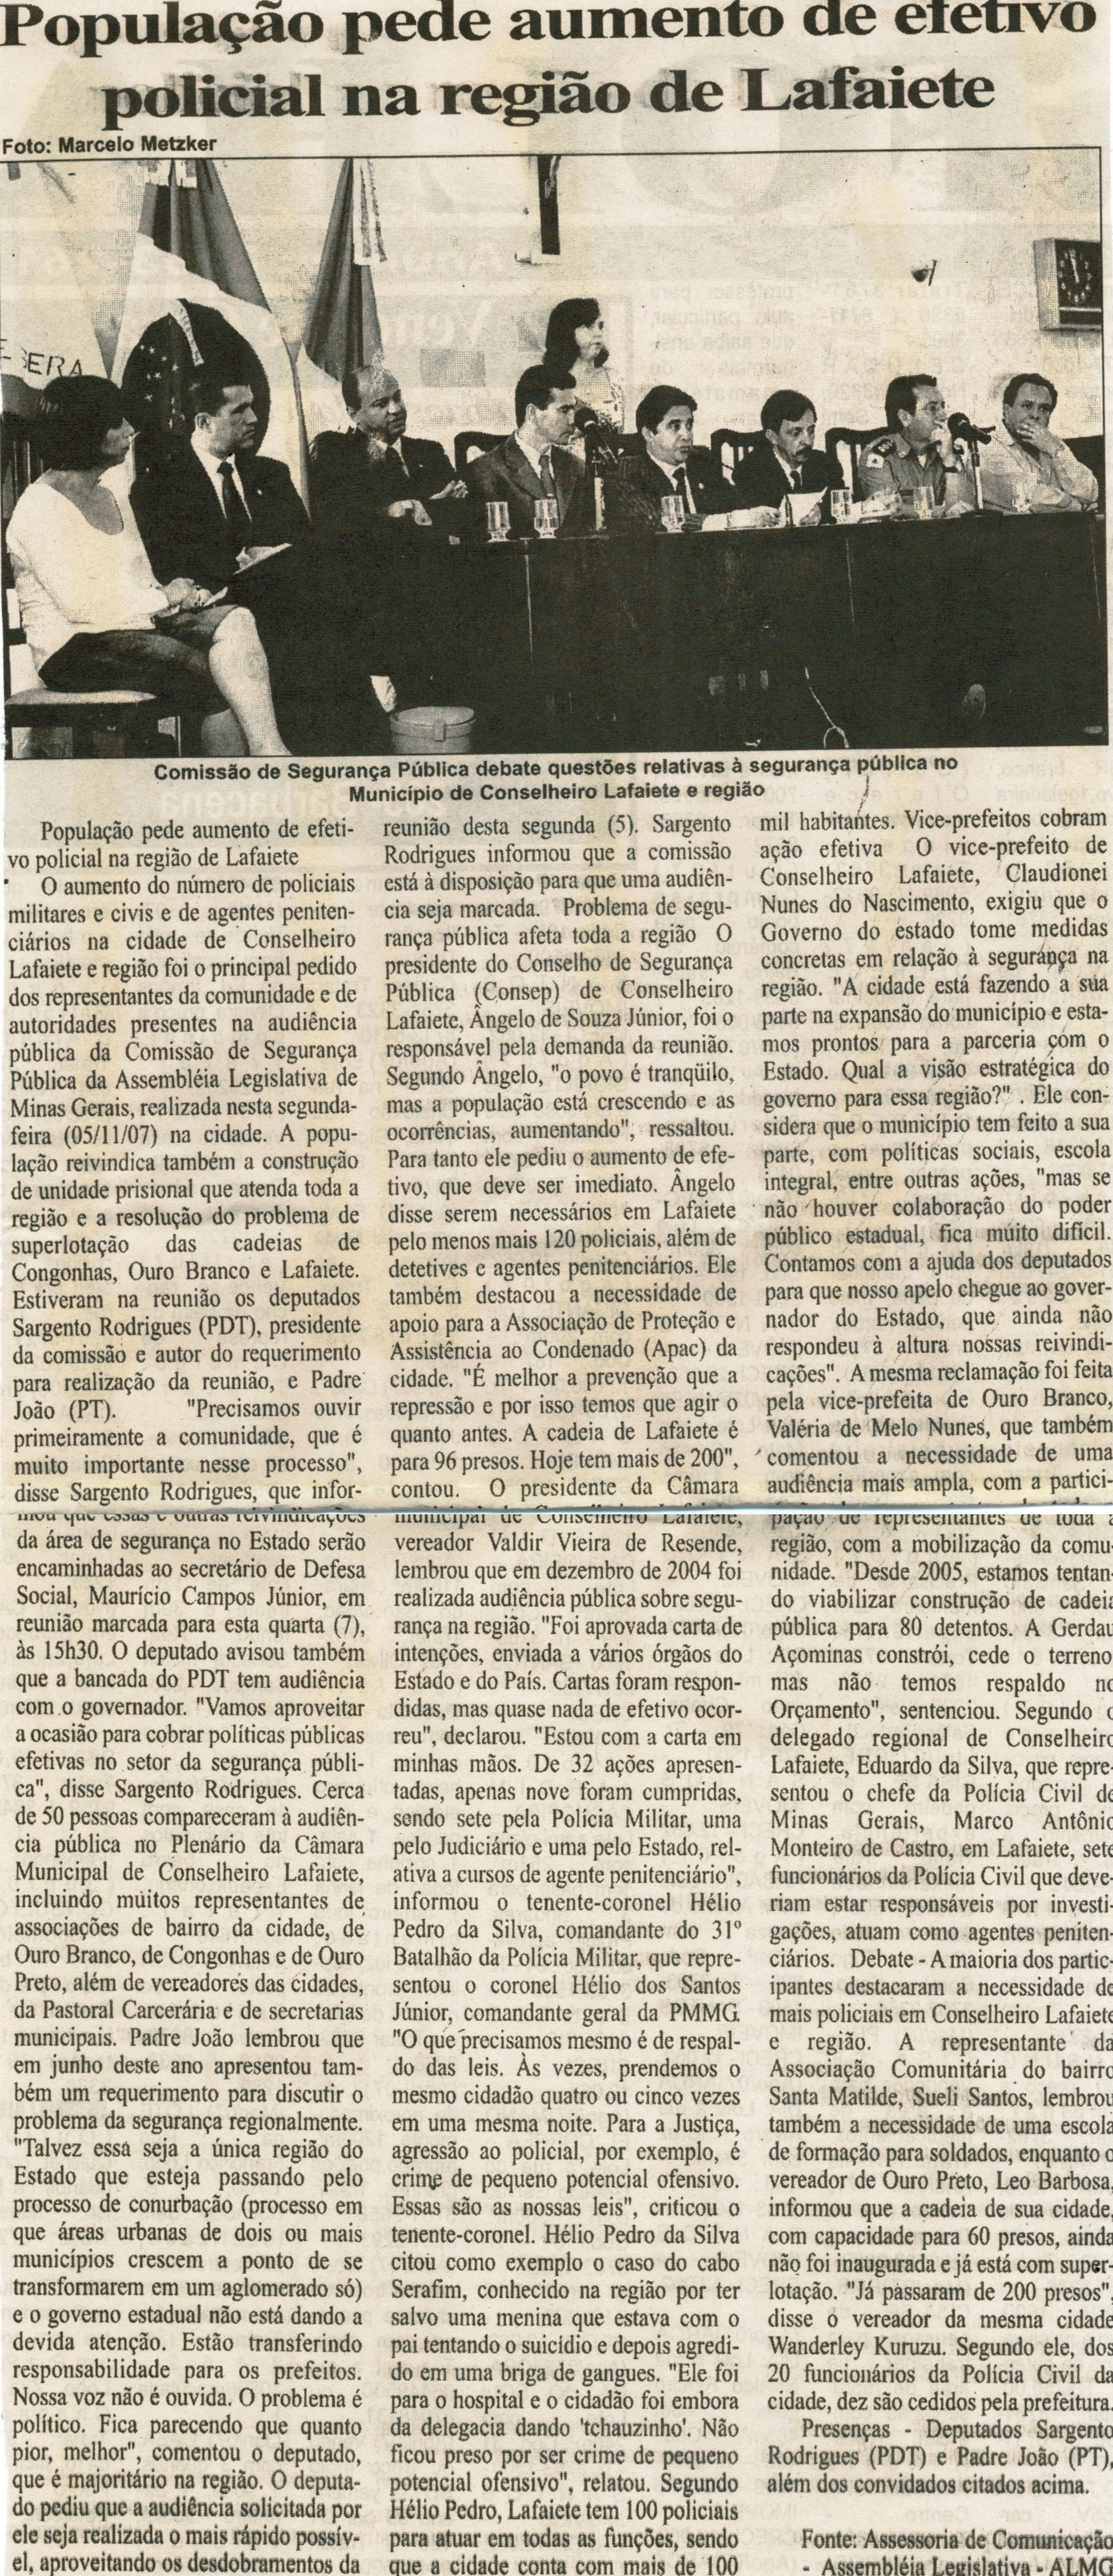 População pede aumento de efetivo policial na região de Lafaiete, Folha Livre, Conselheiro Lafaiete, 10 nov. 2007, 345ª ed., p. 05